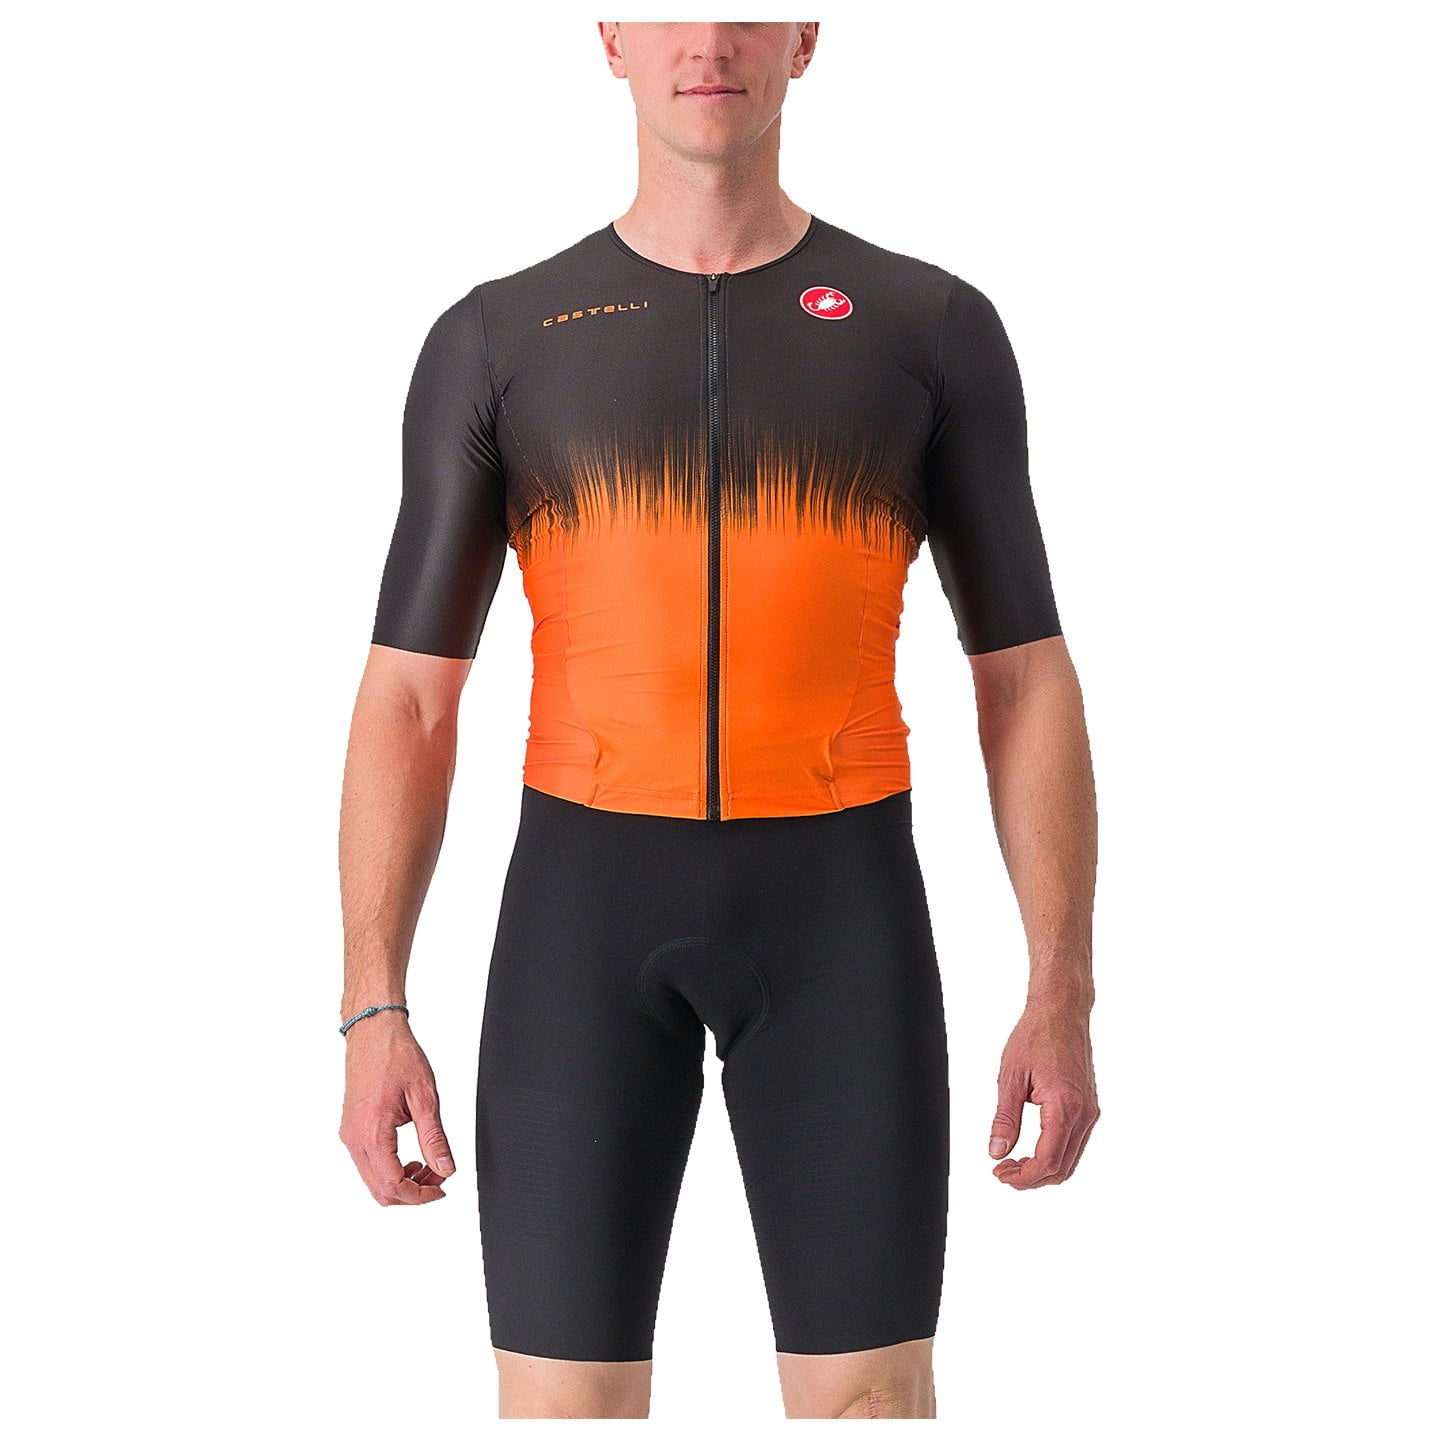 CASTELLI Sanremo Ultra Tri Suit Tri Suit, for men, size XL, Triathlon suit, Triathlon gear